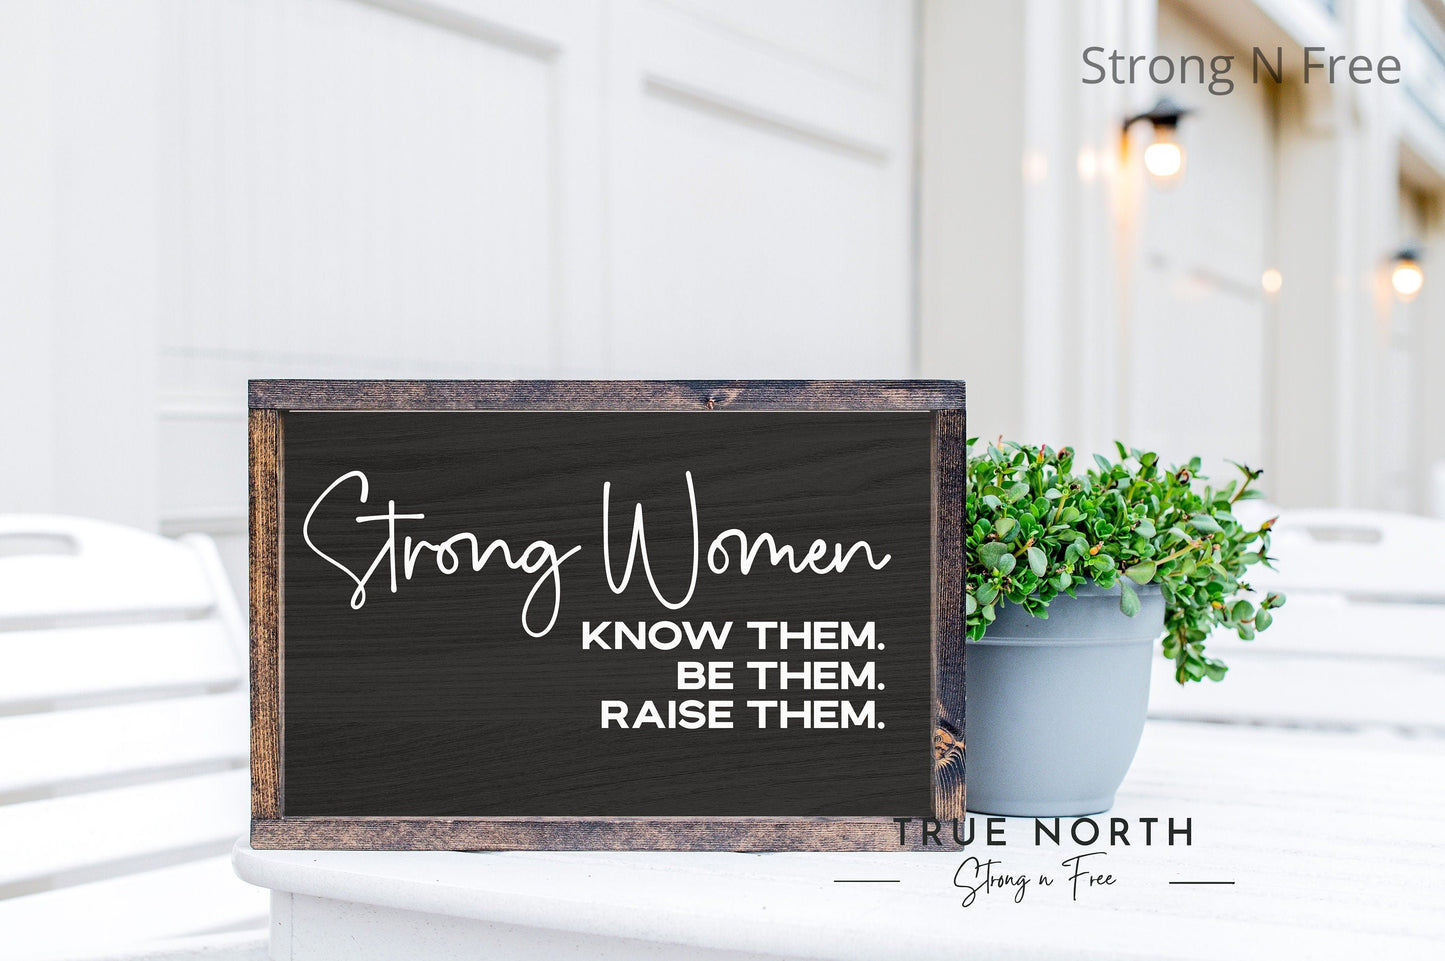 StrongWomen Raising Strong Women, Mom Shirts, Inspirational Shirts for Mom, Girl Mom Shirt, Girl Mom Gift, Feminist Mom Shirt, Motherhood.